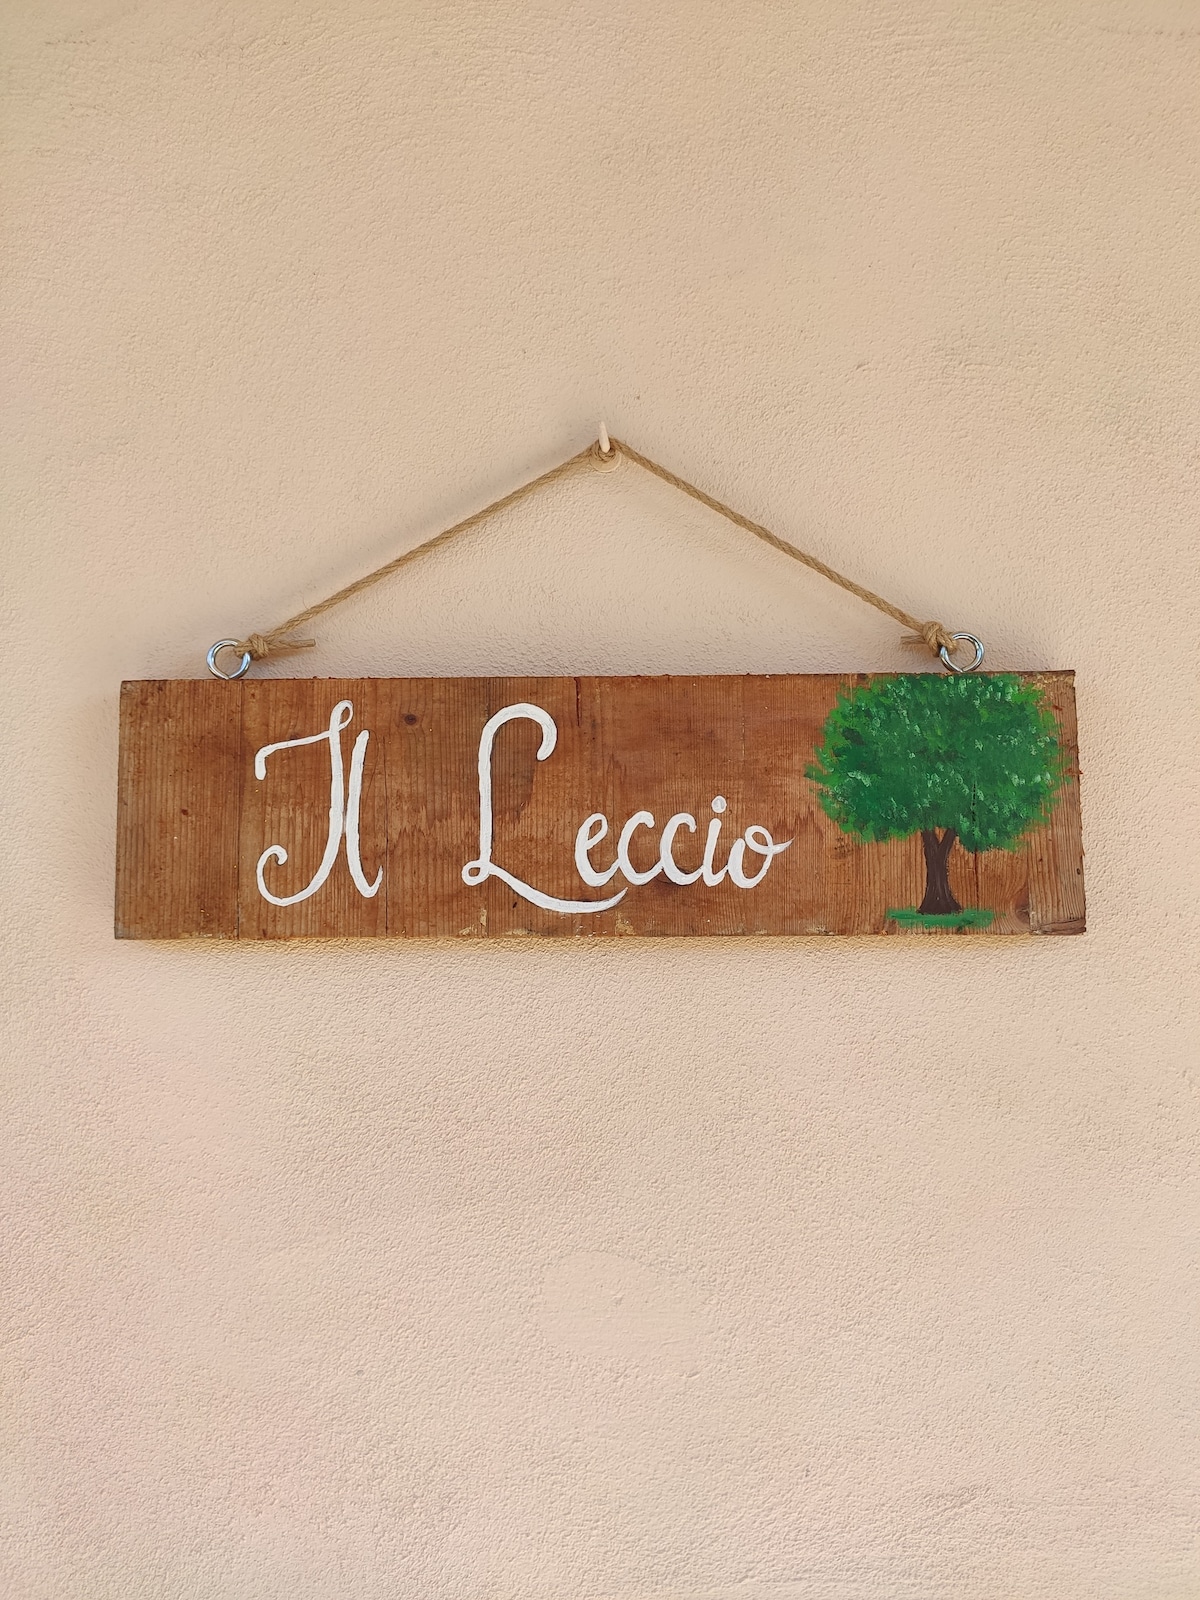 在Maria的房子里， "il Leccio"公寓